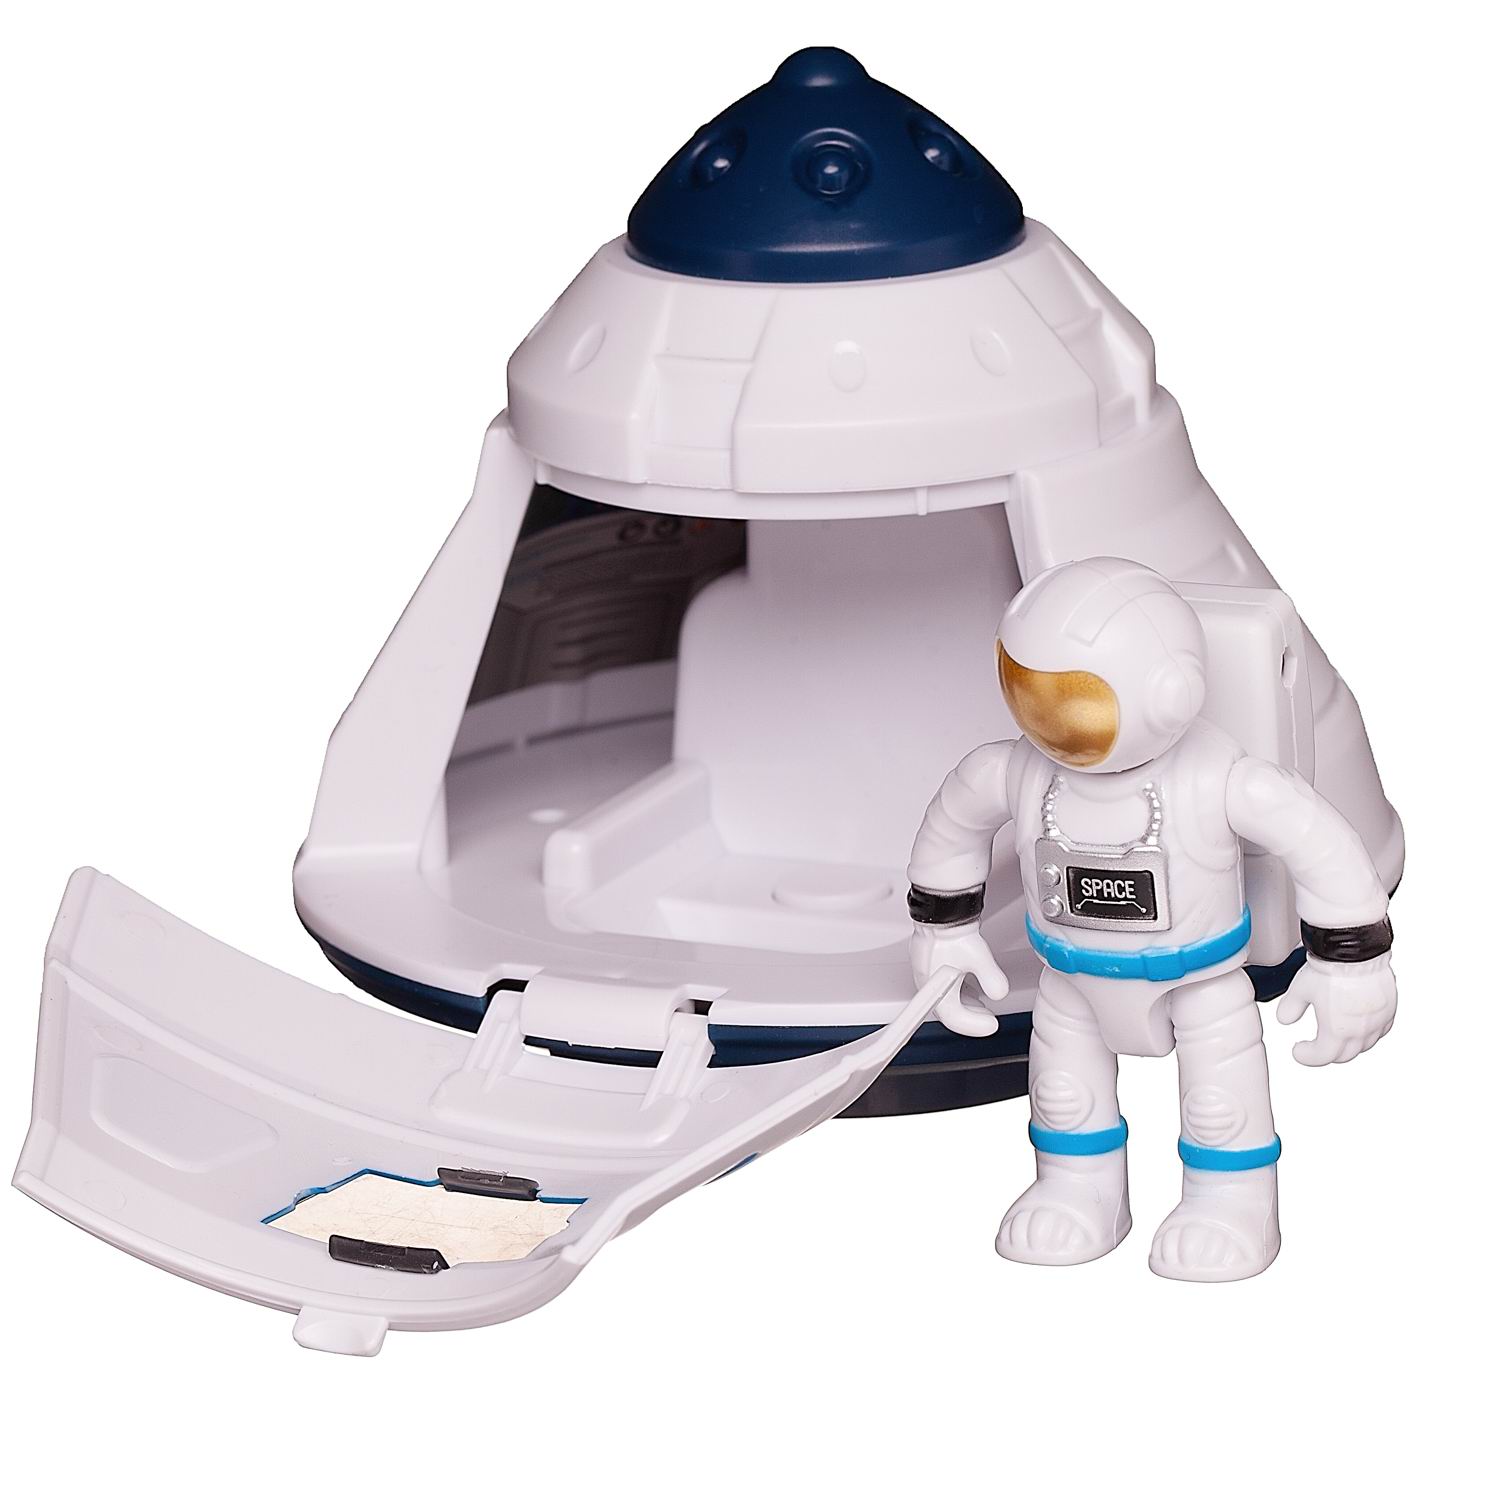 Игровой набор Junfa Капсула посадочная космическая с фигуркой космонавта - фото 5